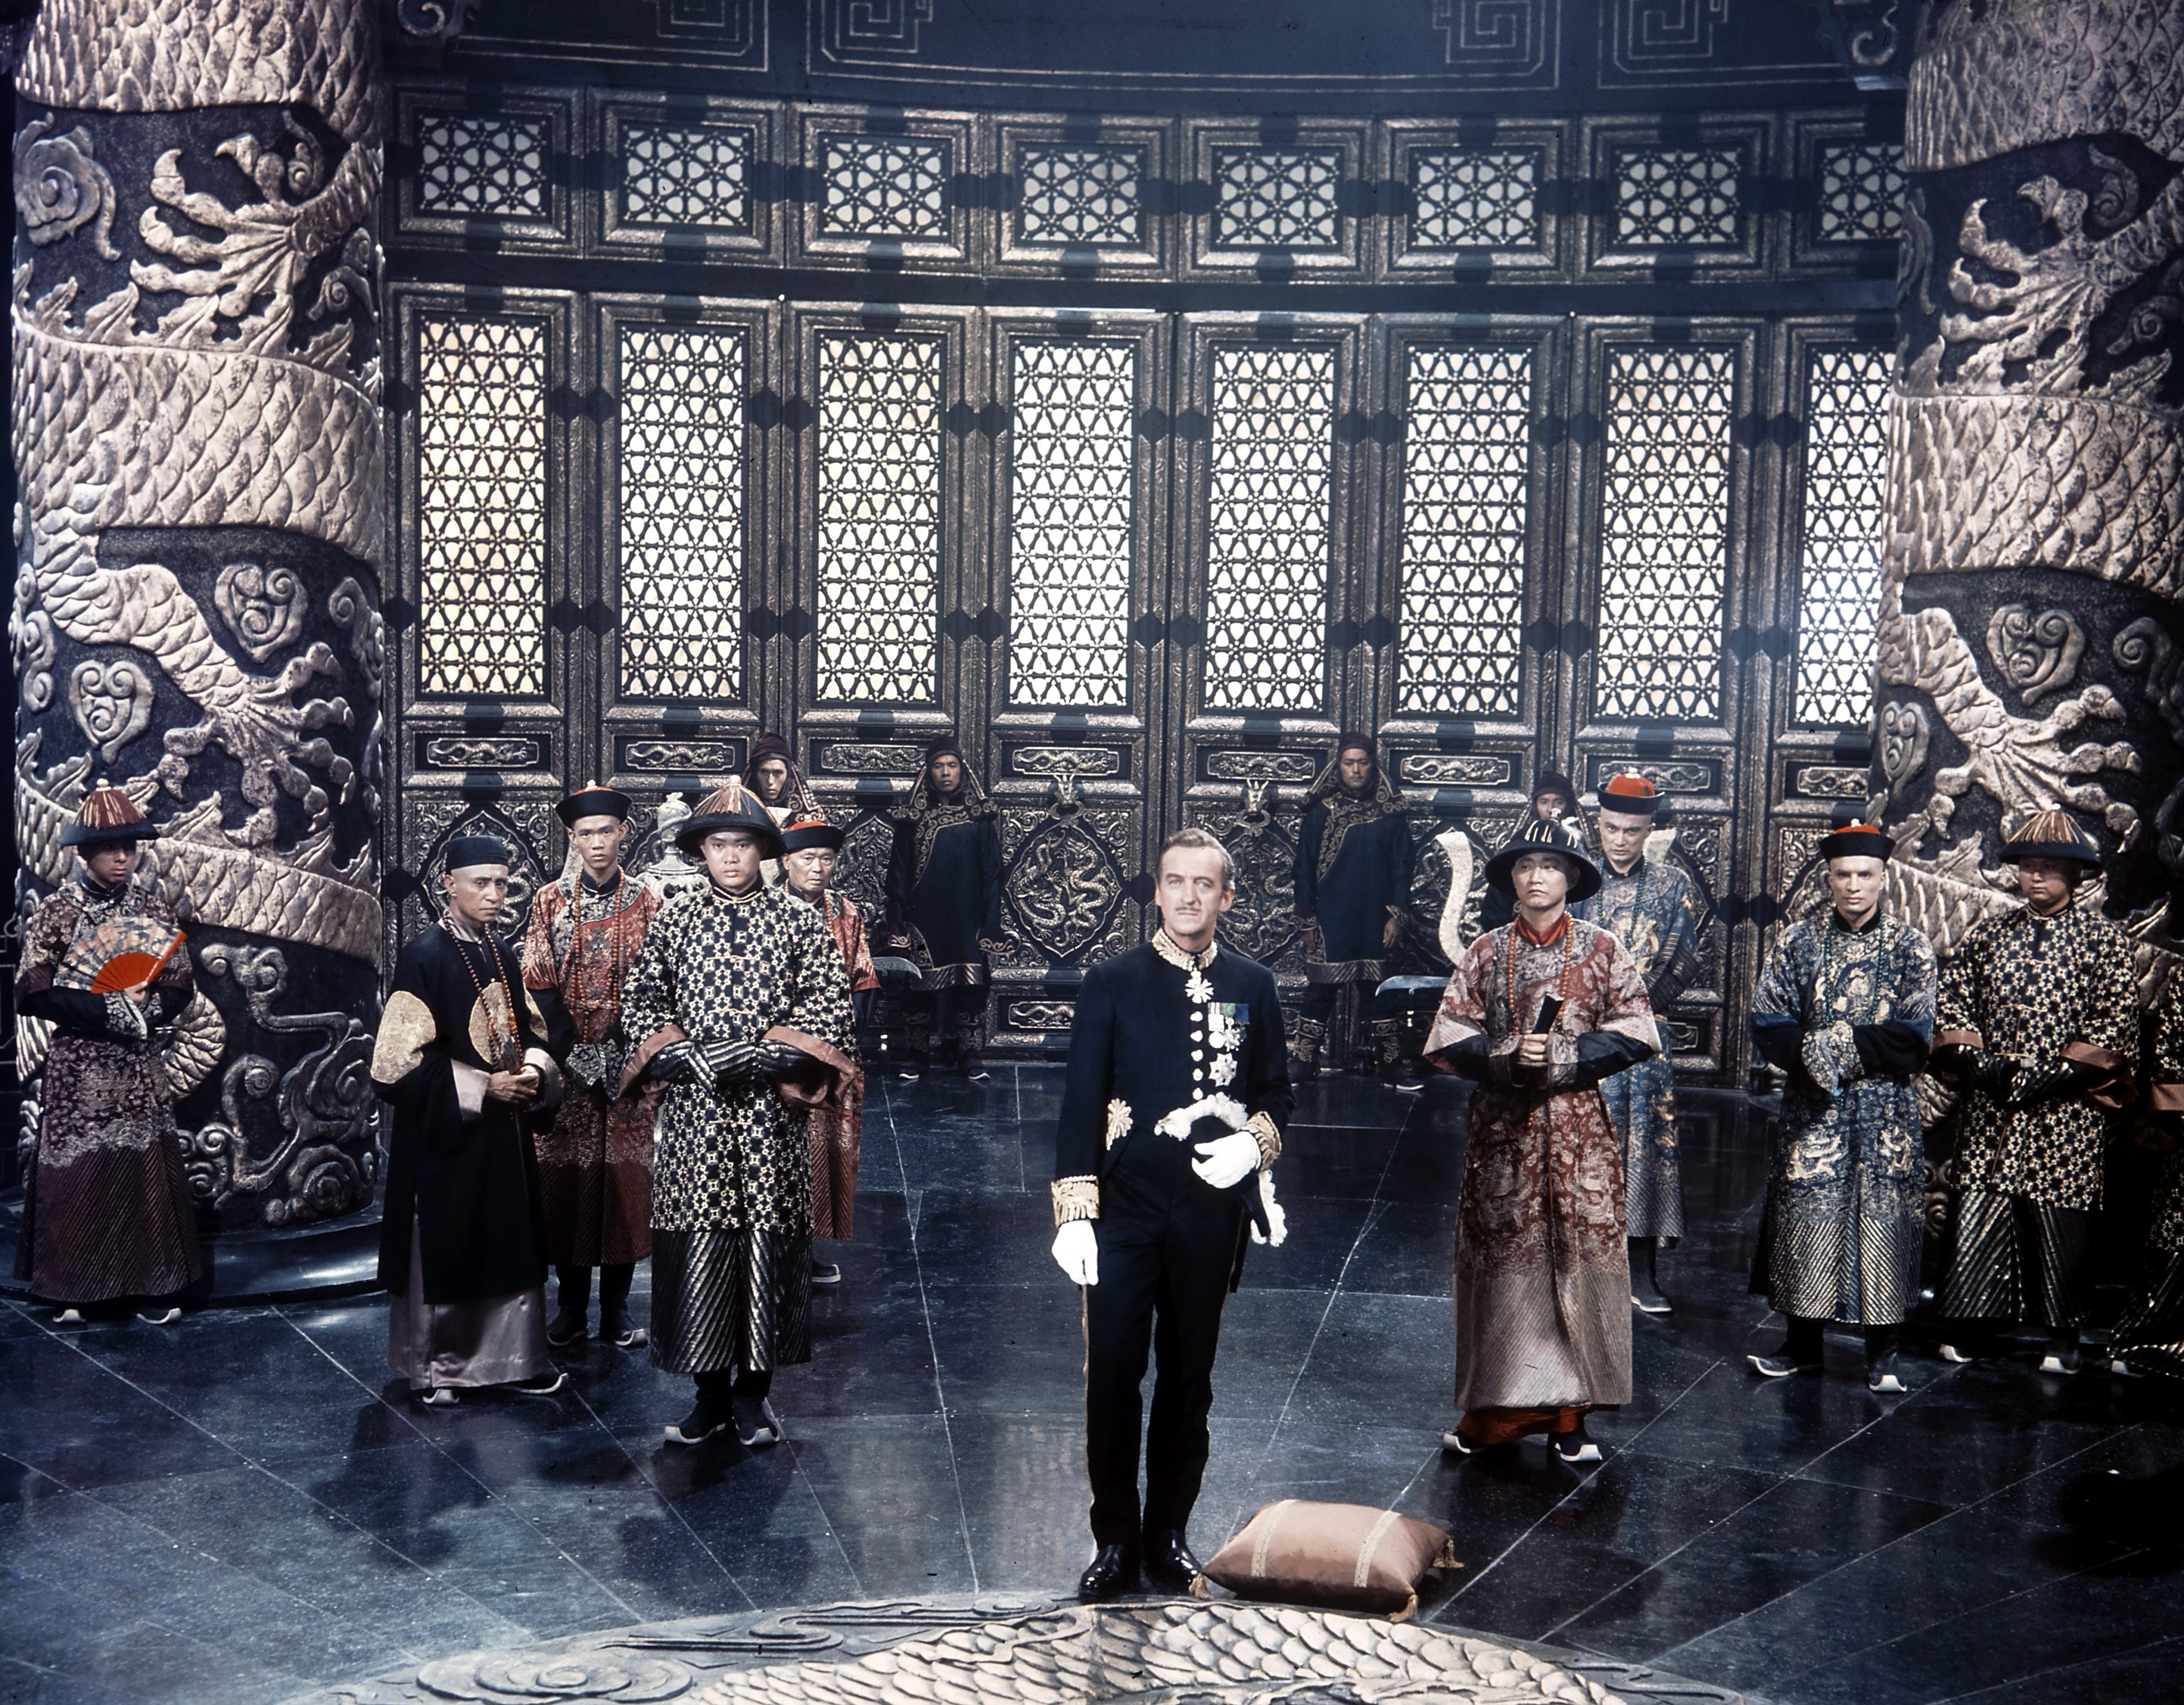 Still of David Niven in 55 Days at Peking (1963)